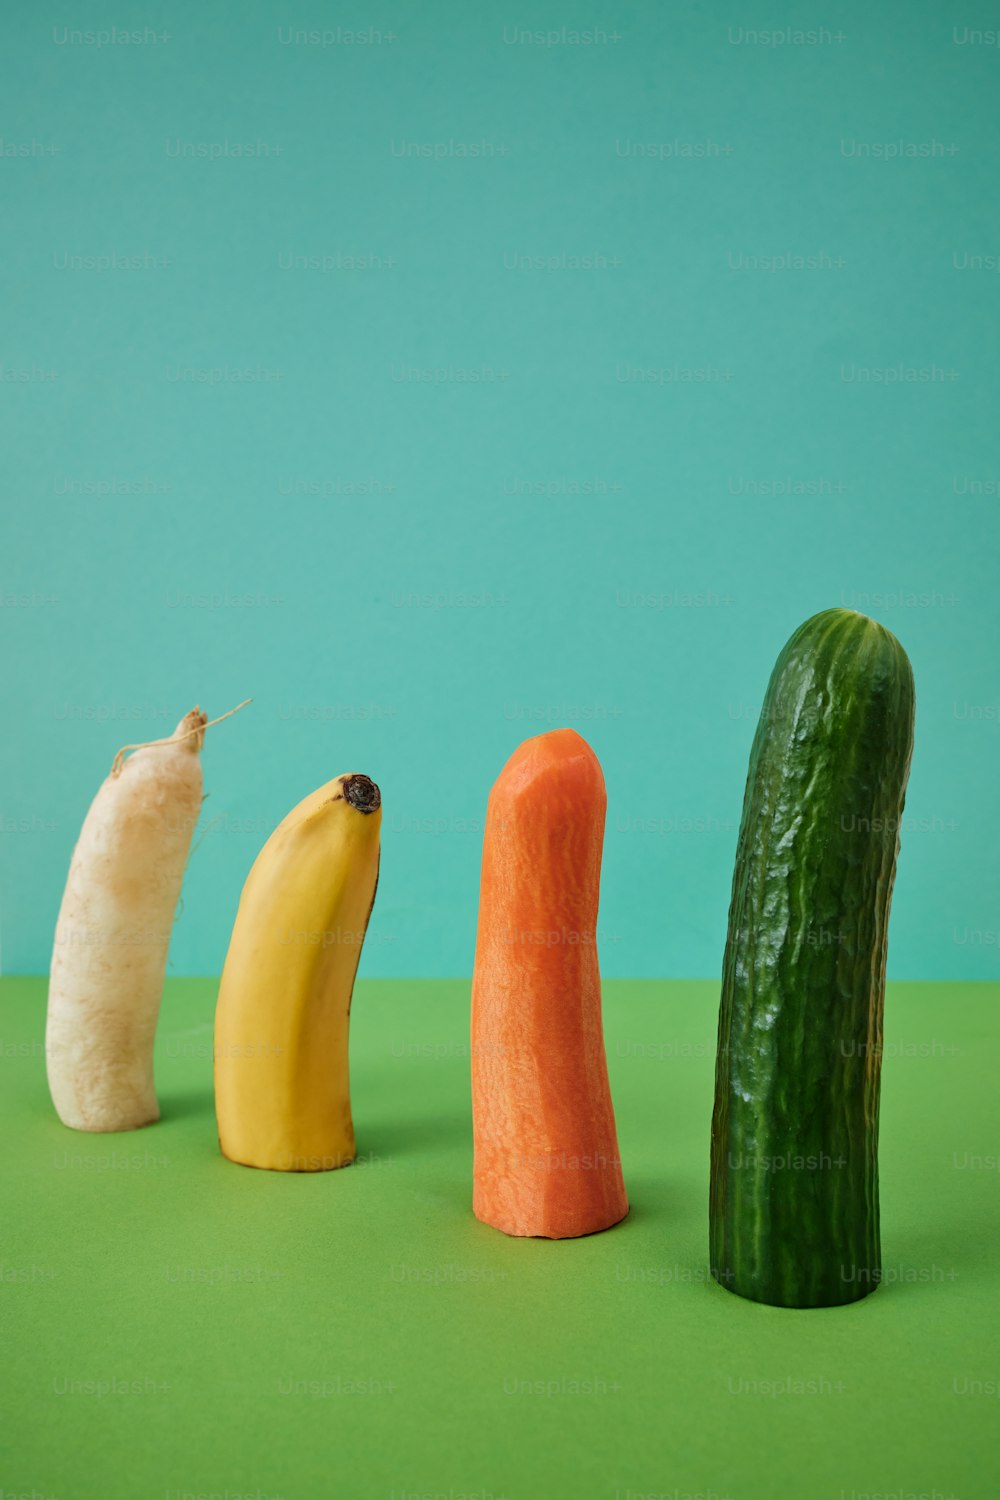 un cetriolo, una banana e una carota sono disposti in fila